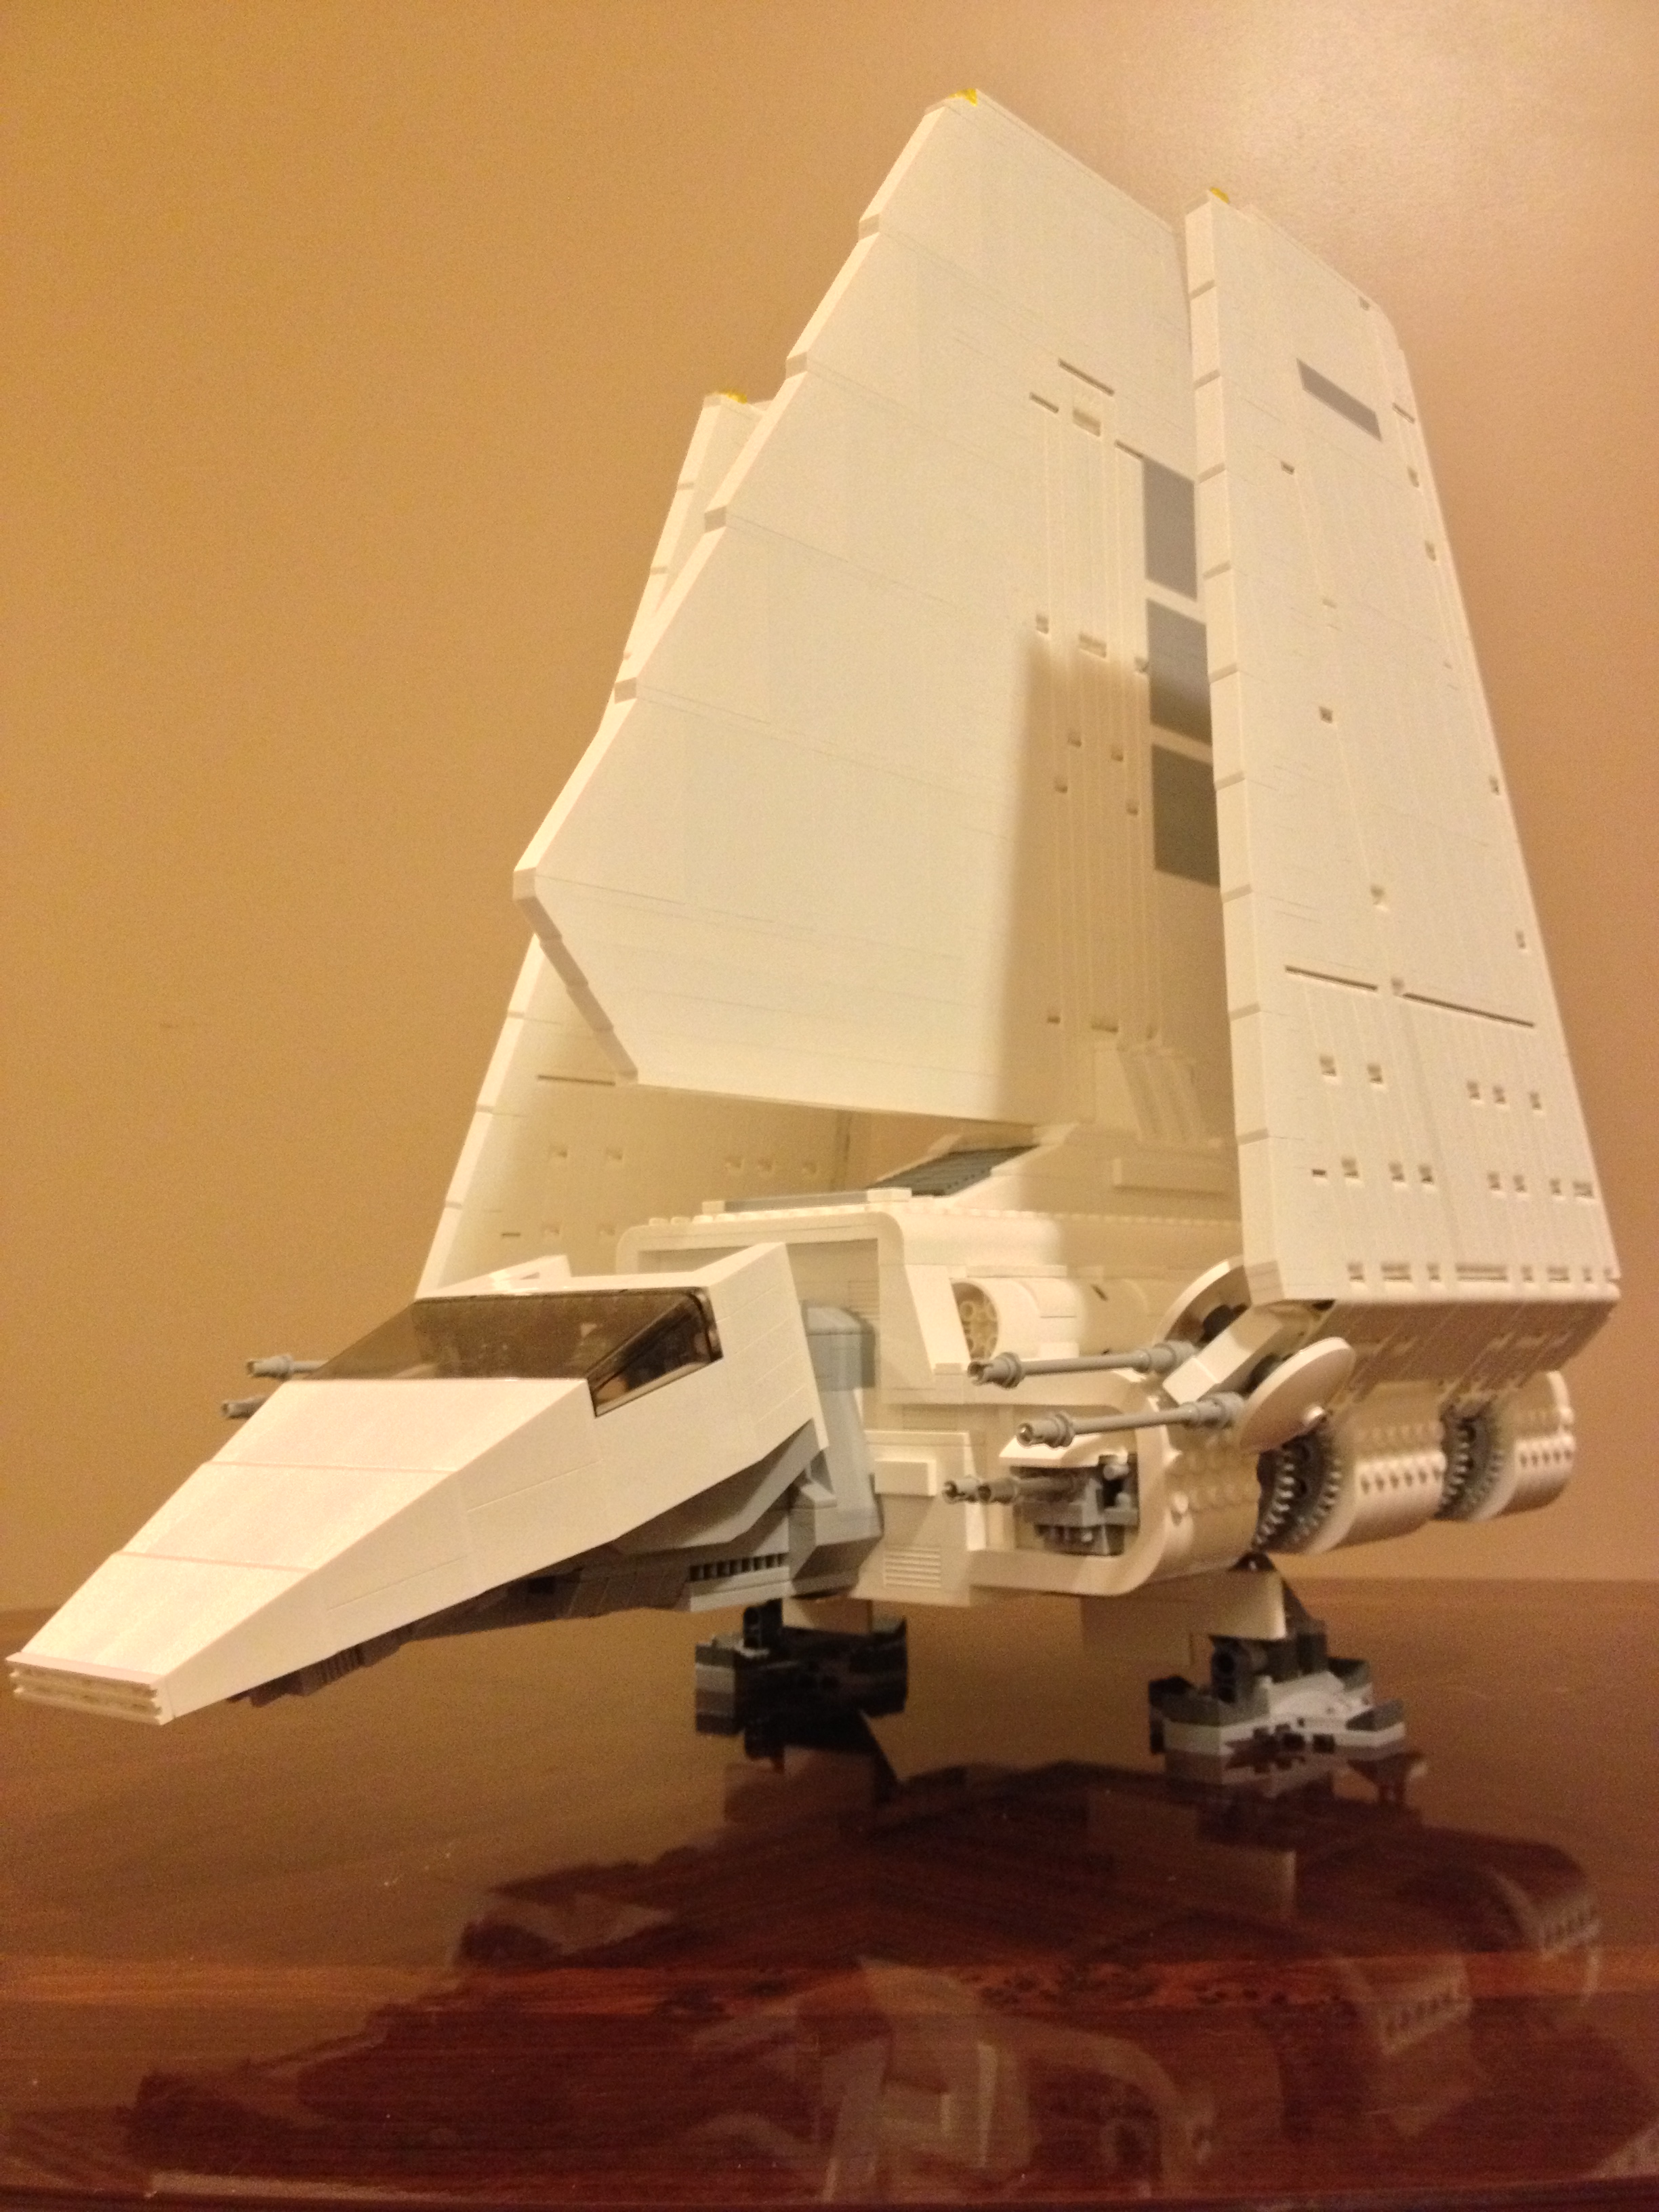 lego star wars lambda shuttle